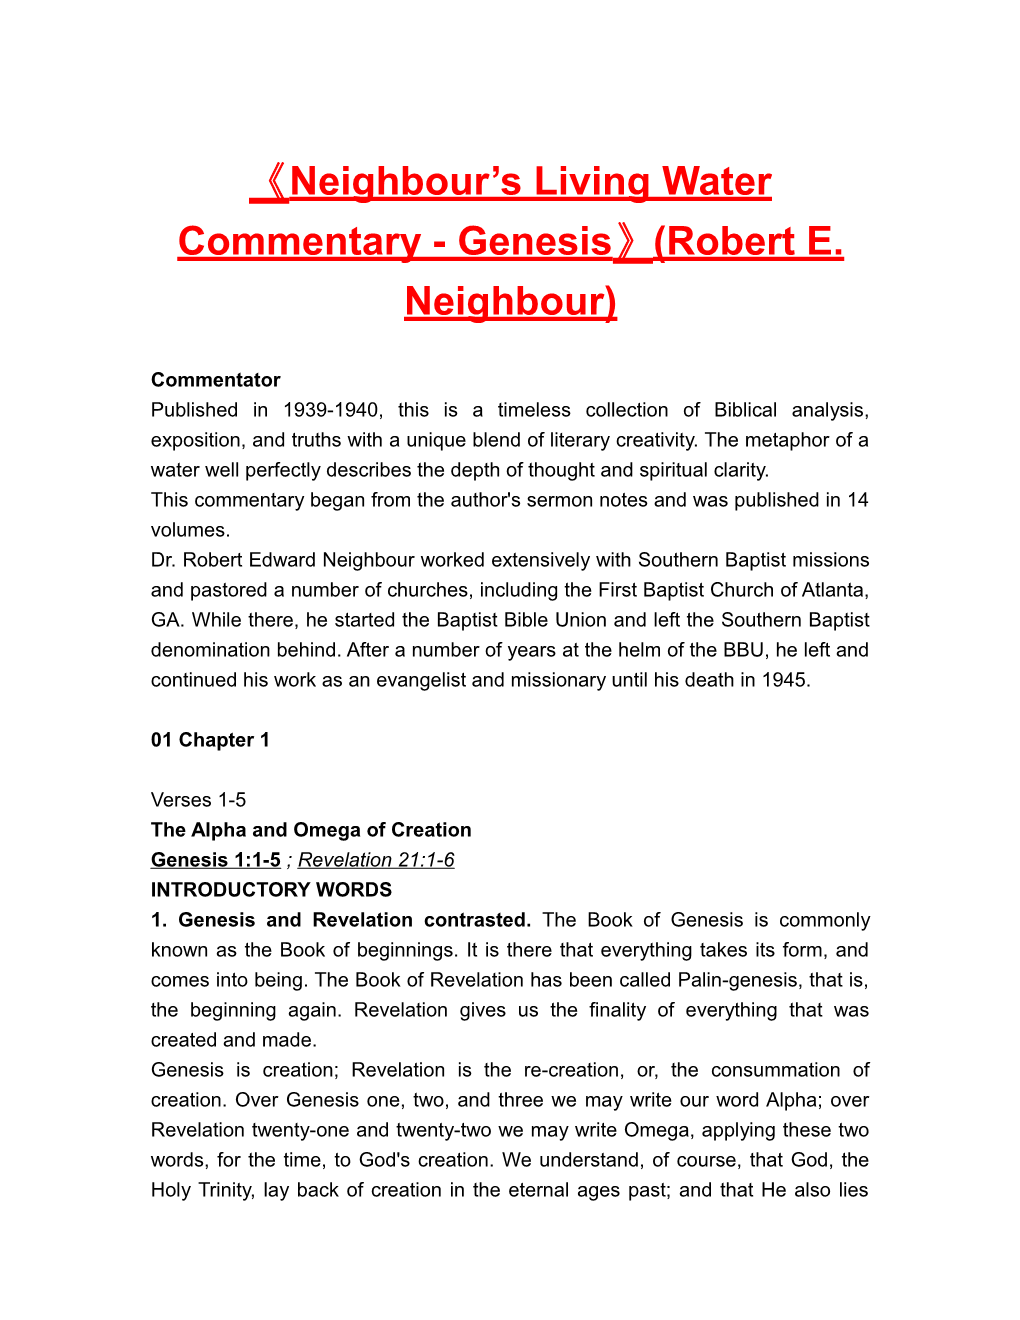 Neighbour S Living Water Commentary-Genesis (Robert E. Neighbour)